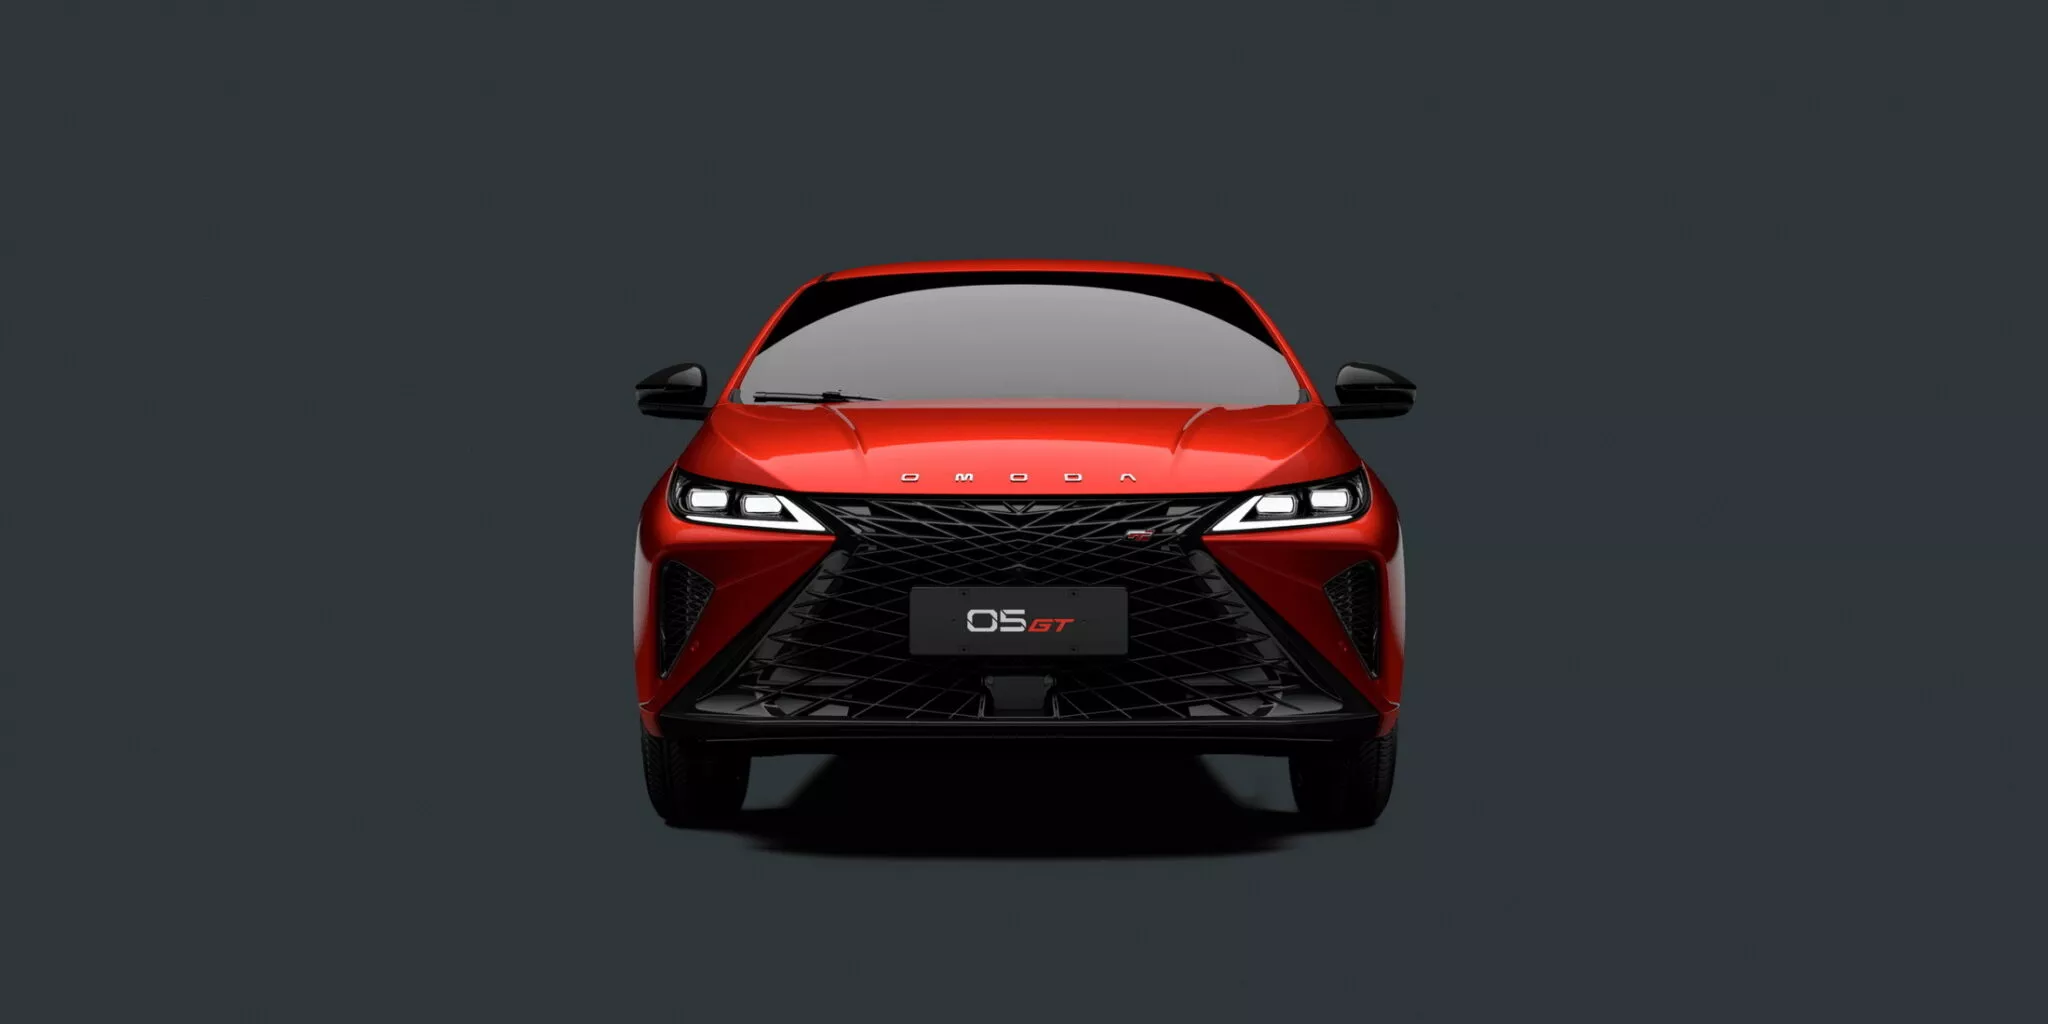 علامة اومودا التابعة لشيري تطرح سيدان رياضية جديدة باسم O5 GT ومحرك بنزين تيربو 2